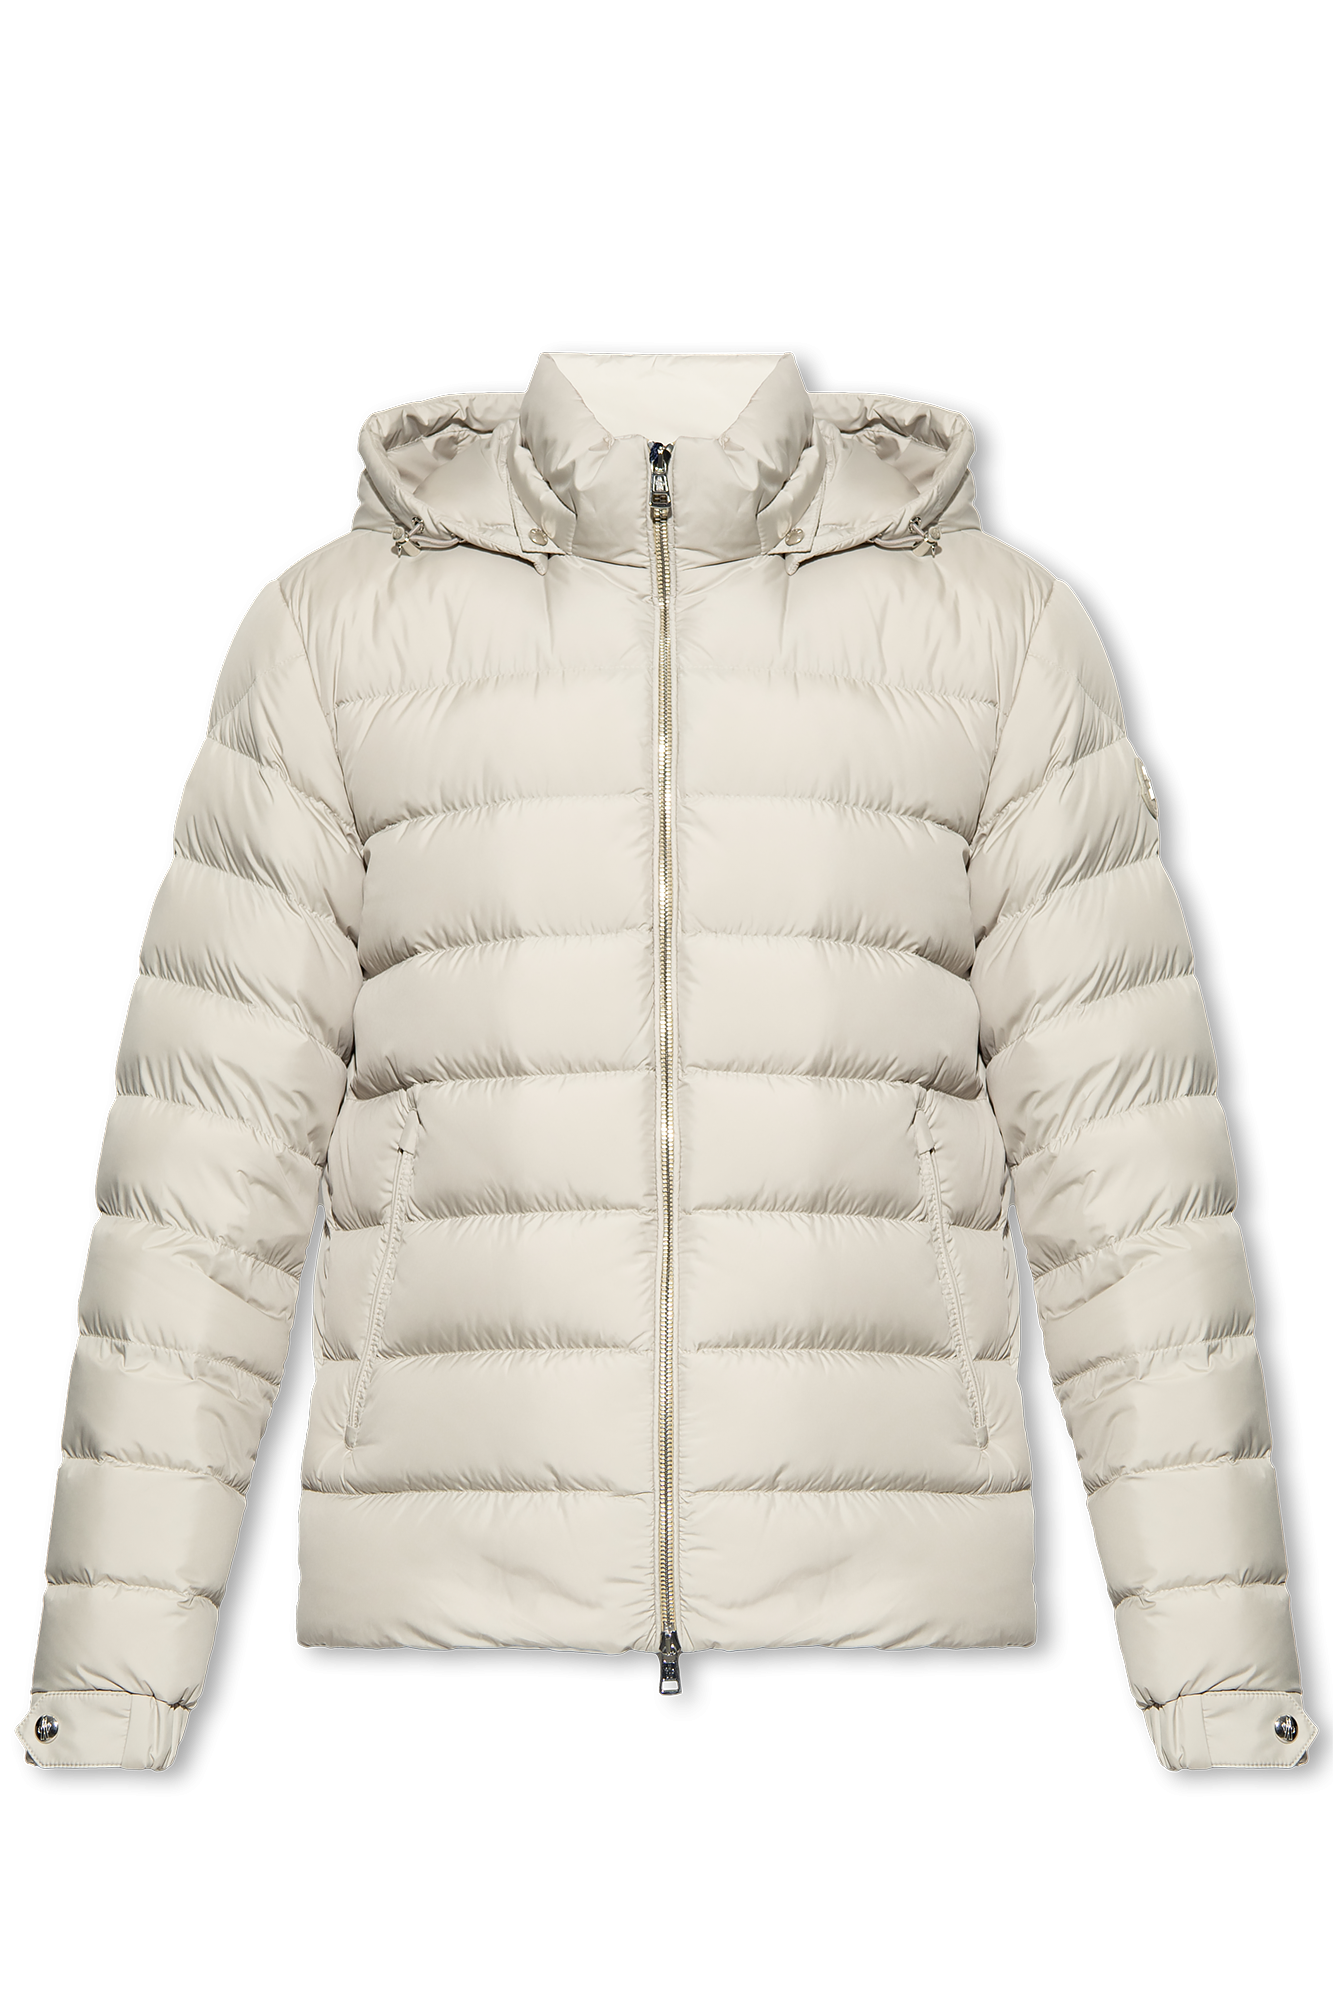 Moncler ‘Arneb’ jacket | Men's Clothing | Vitkac